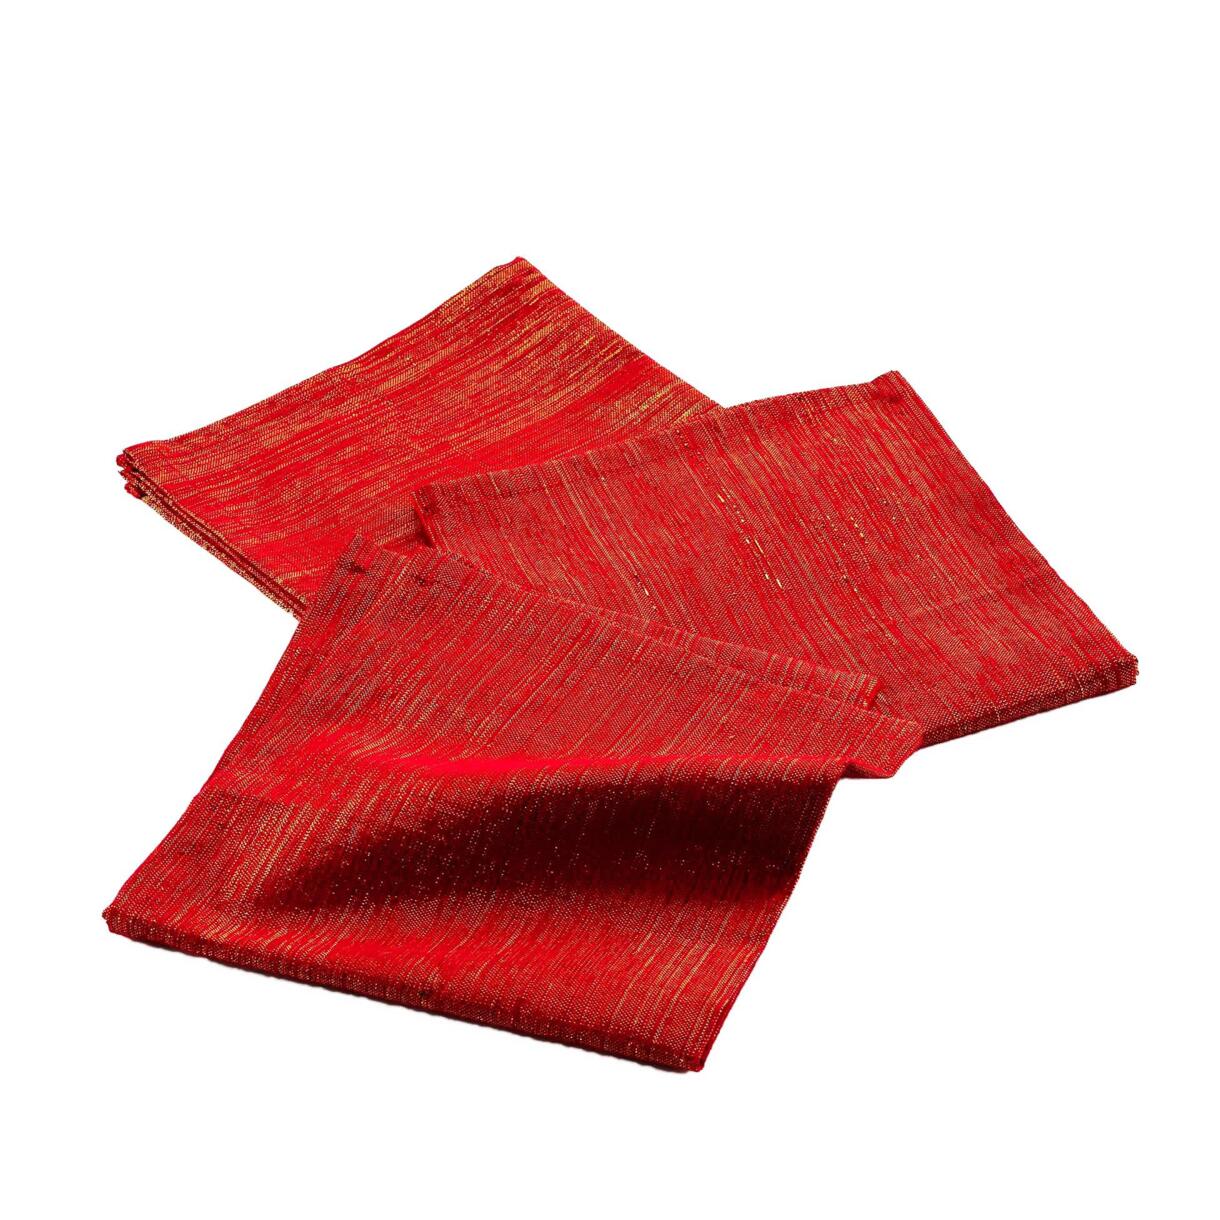 Lote de 3 servilletas algodón Elegancia Rojo 1